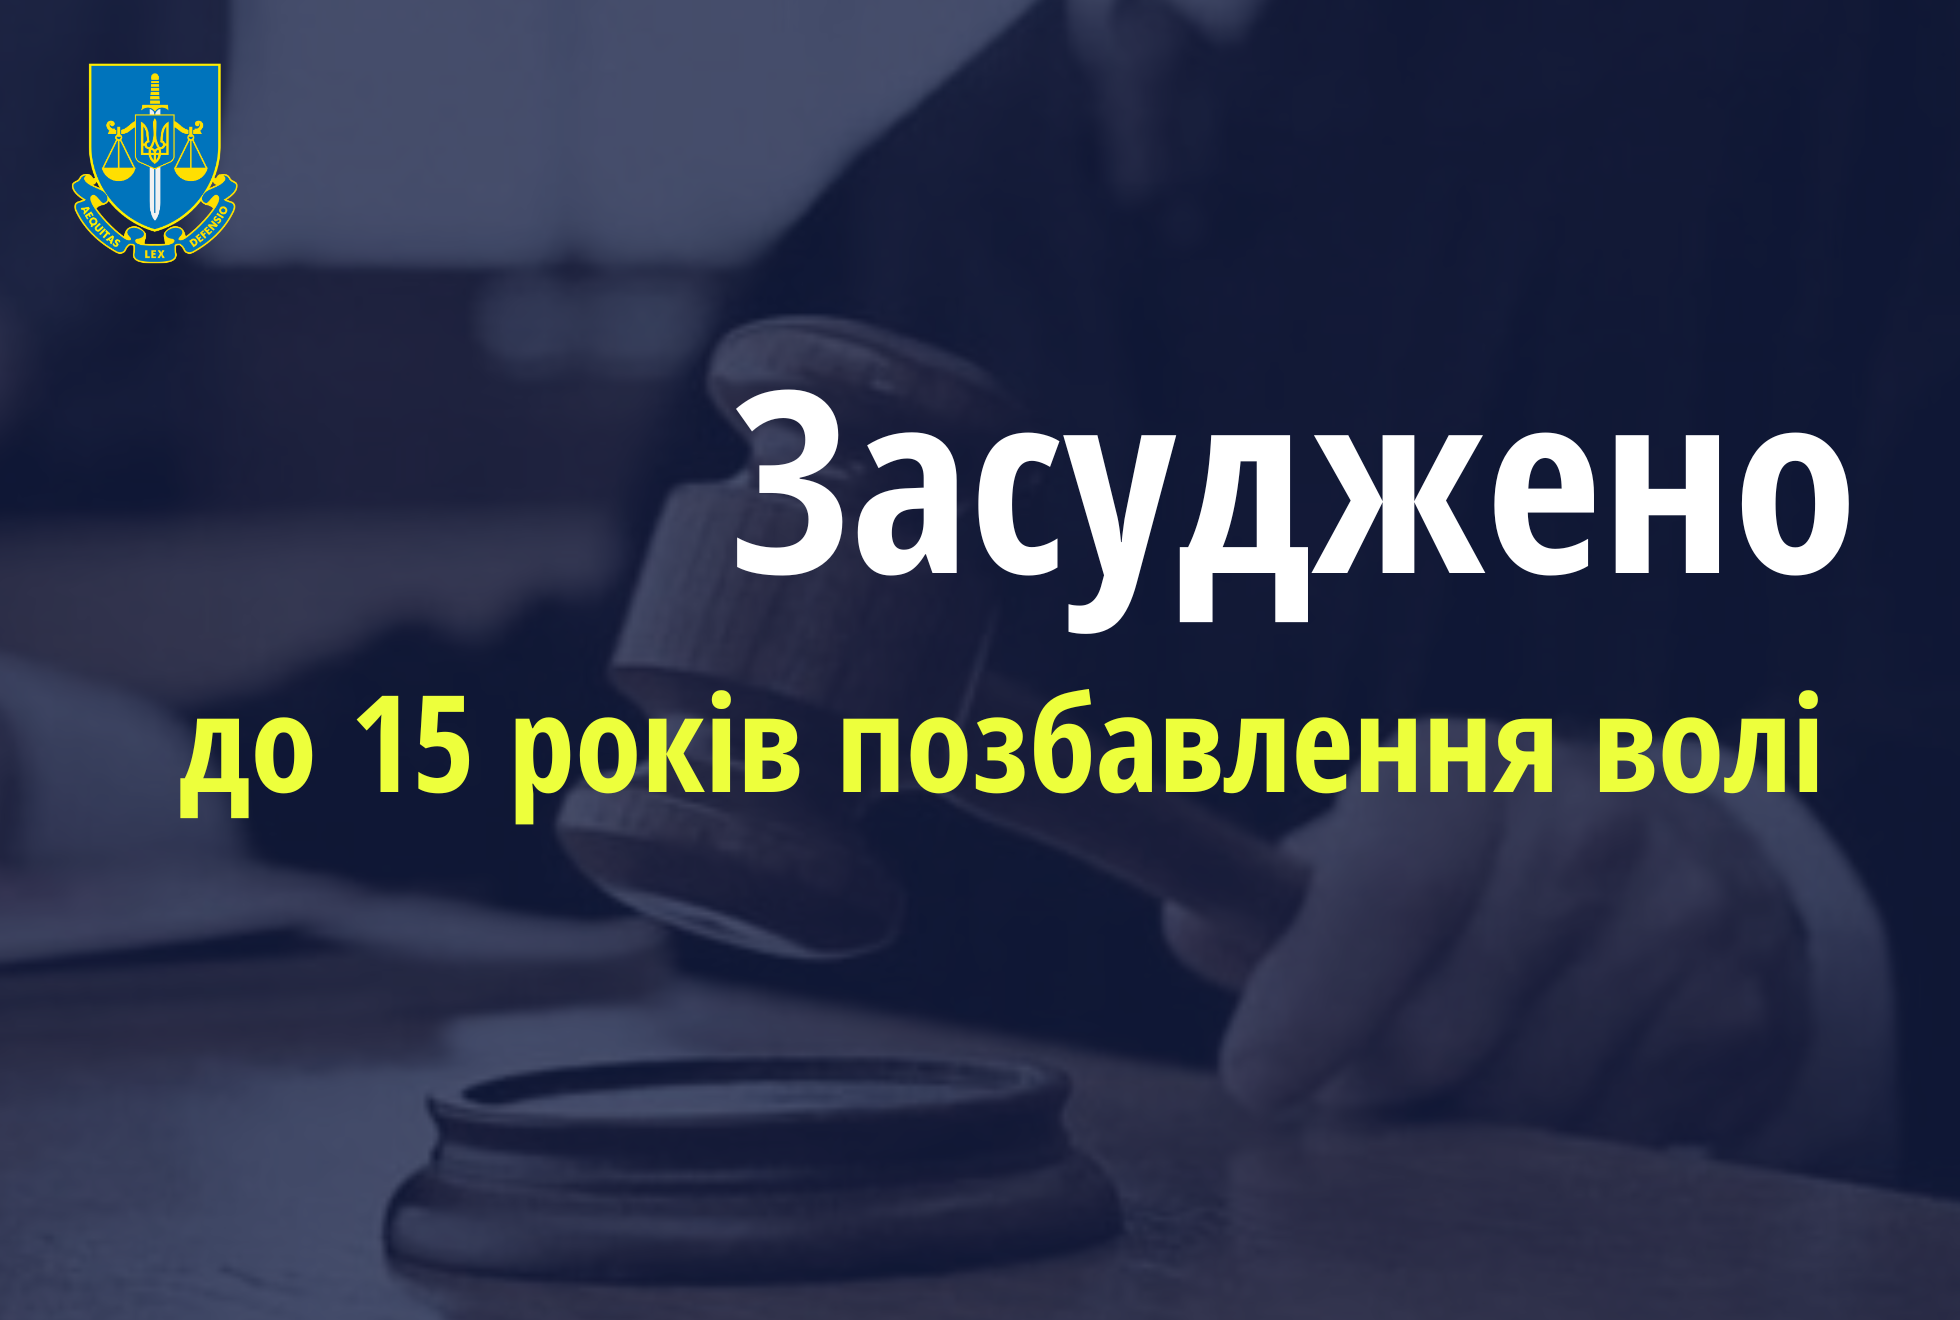 Мешканця Кіровоградщини засуджено до 15 років ув’язнення за замах на зґвалтування малолітньої дитини